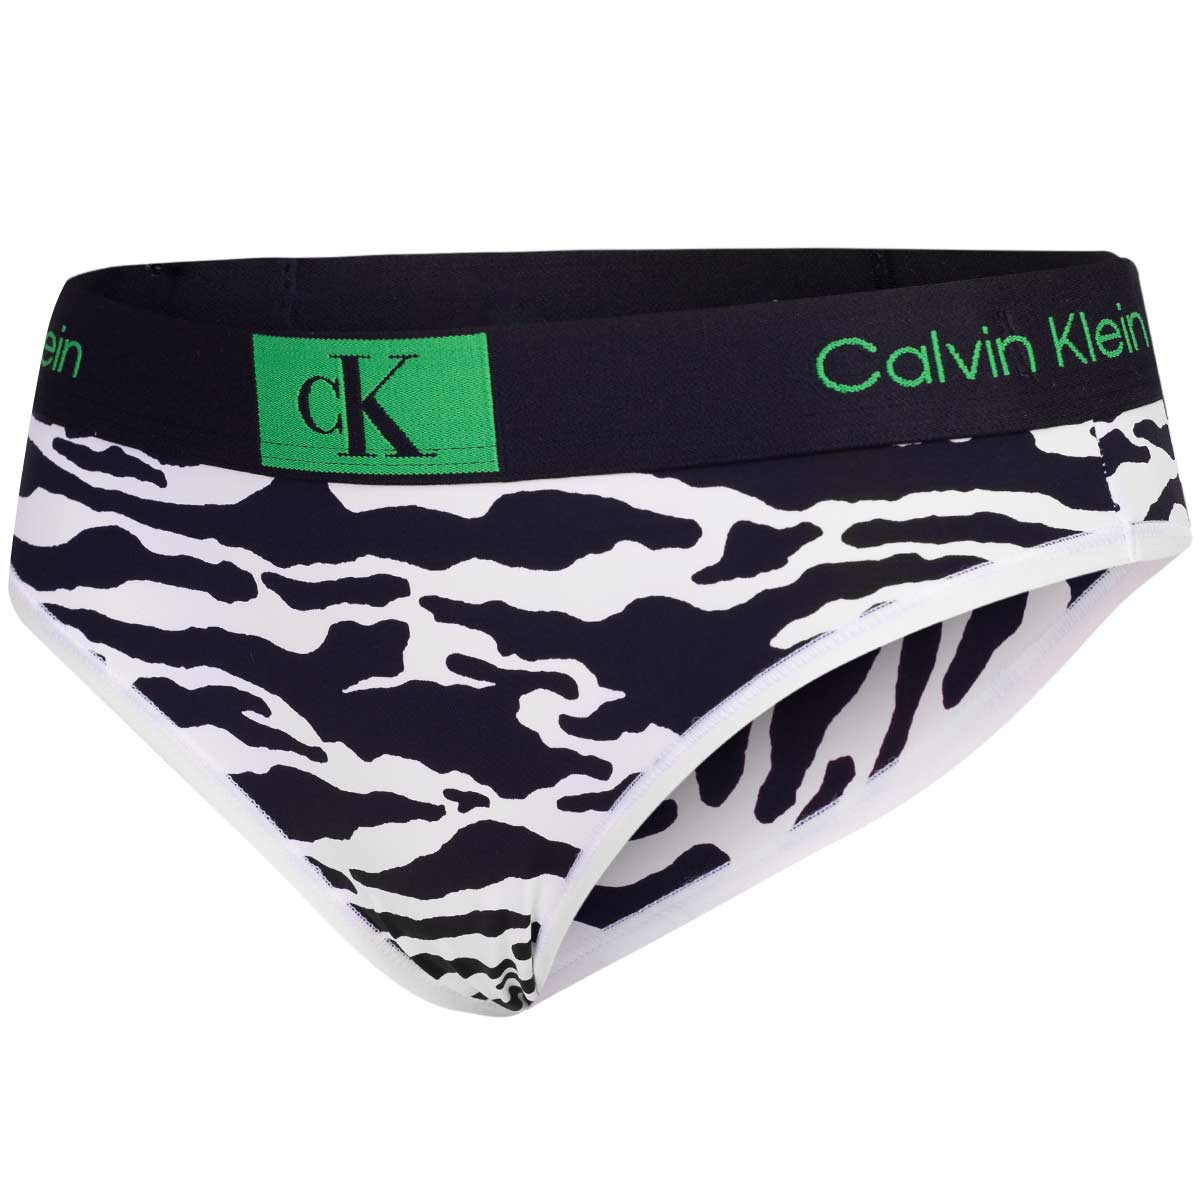 Calvin Klein Underwear Woman's Thong Brief 000QF7249EGNH